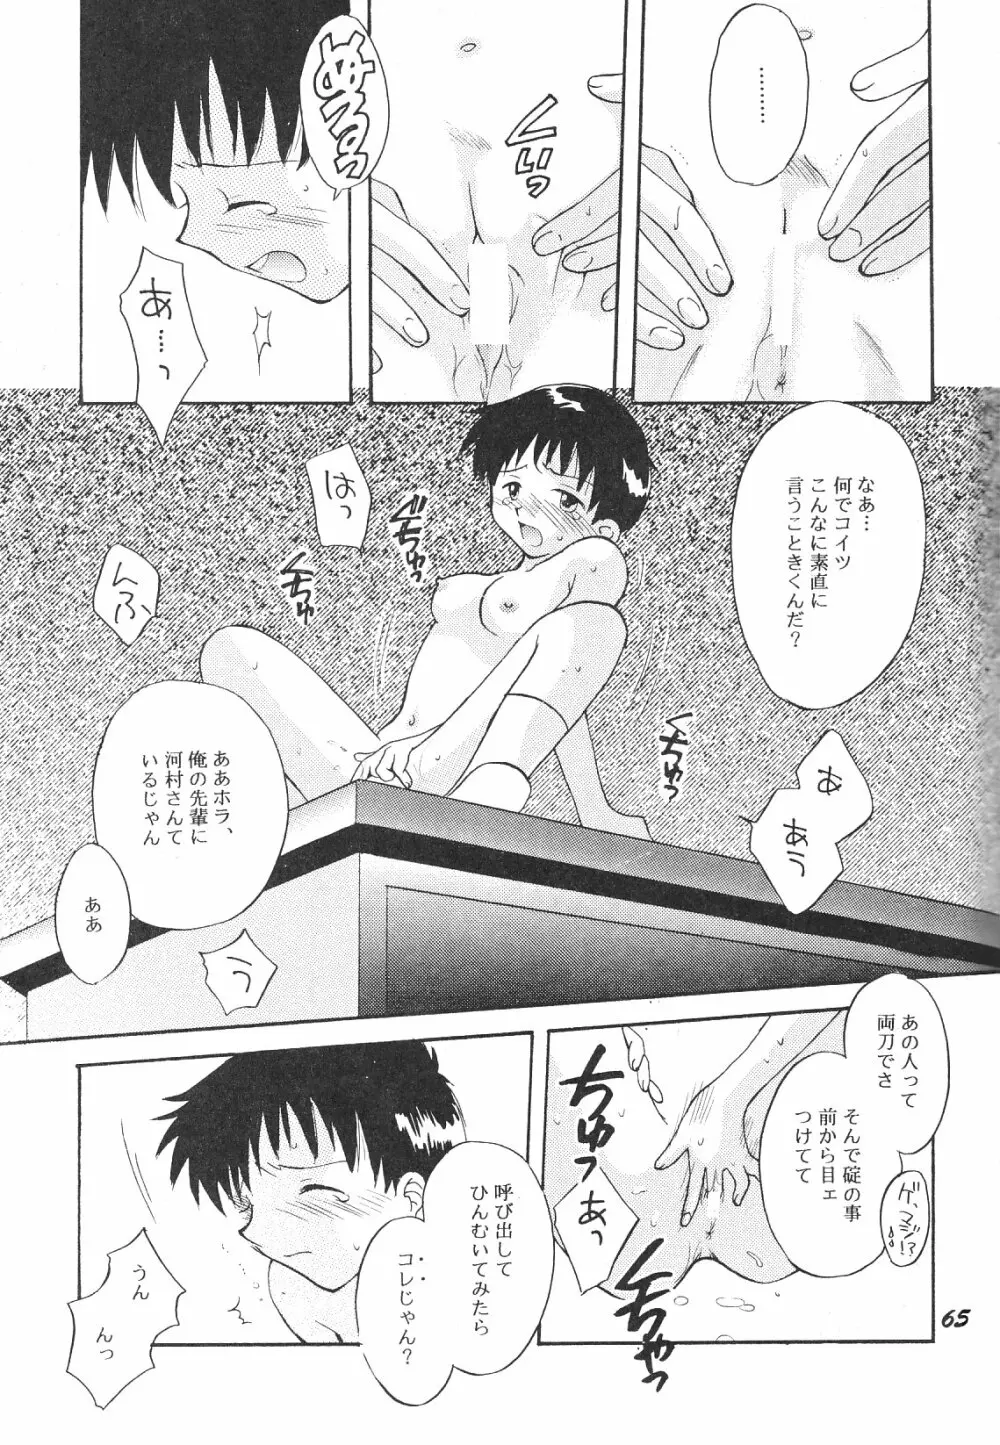 Maniac Juice 女シンジ再録集 ’96-’99 65ページ